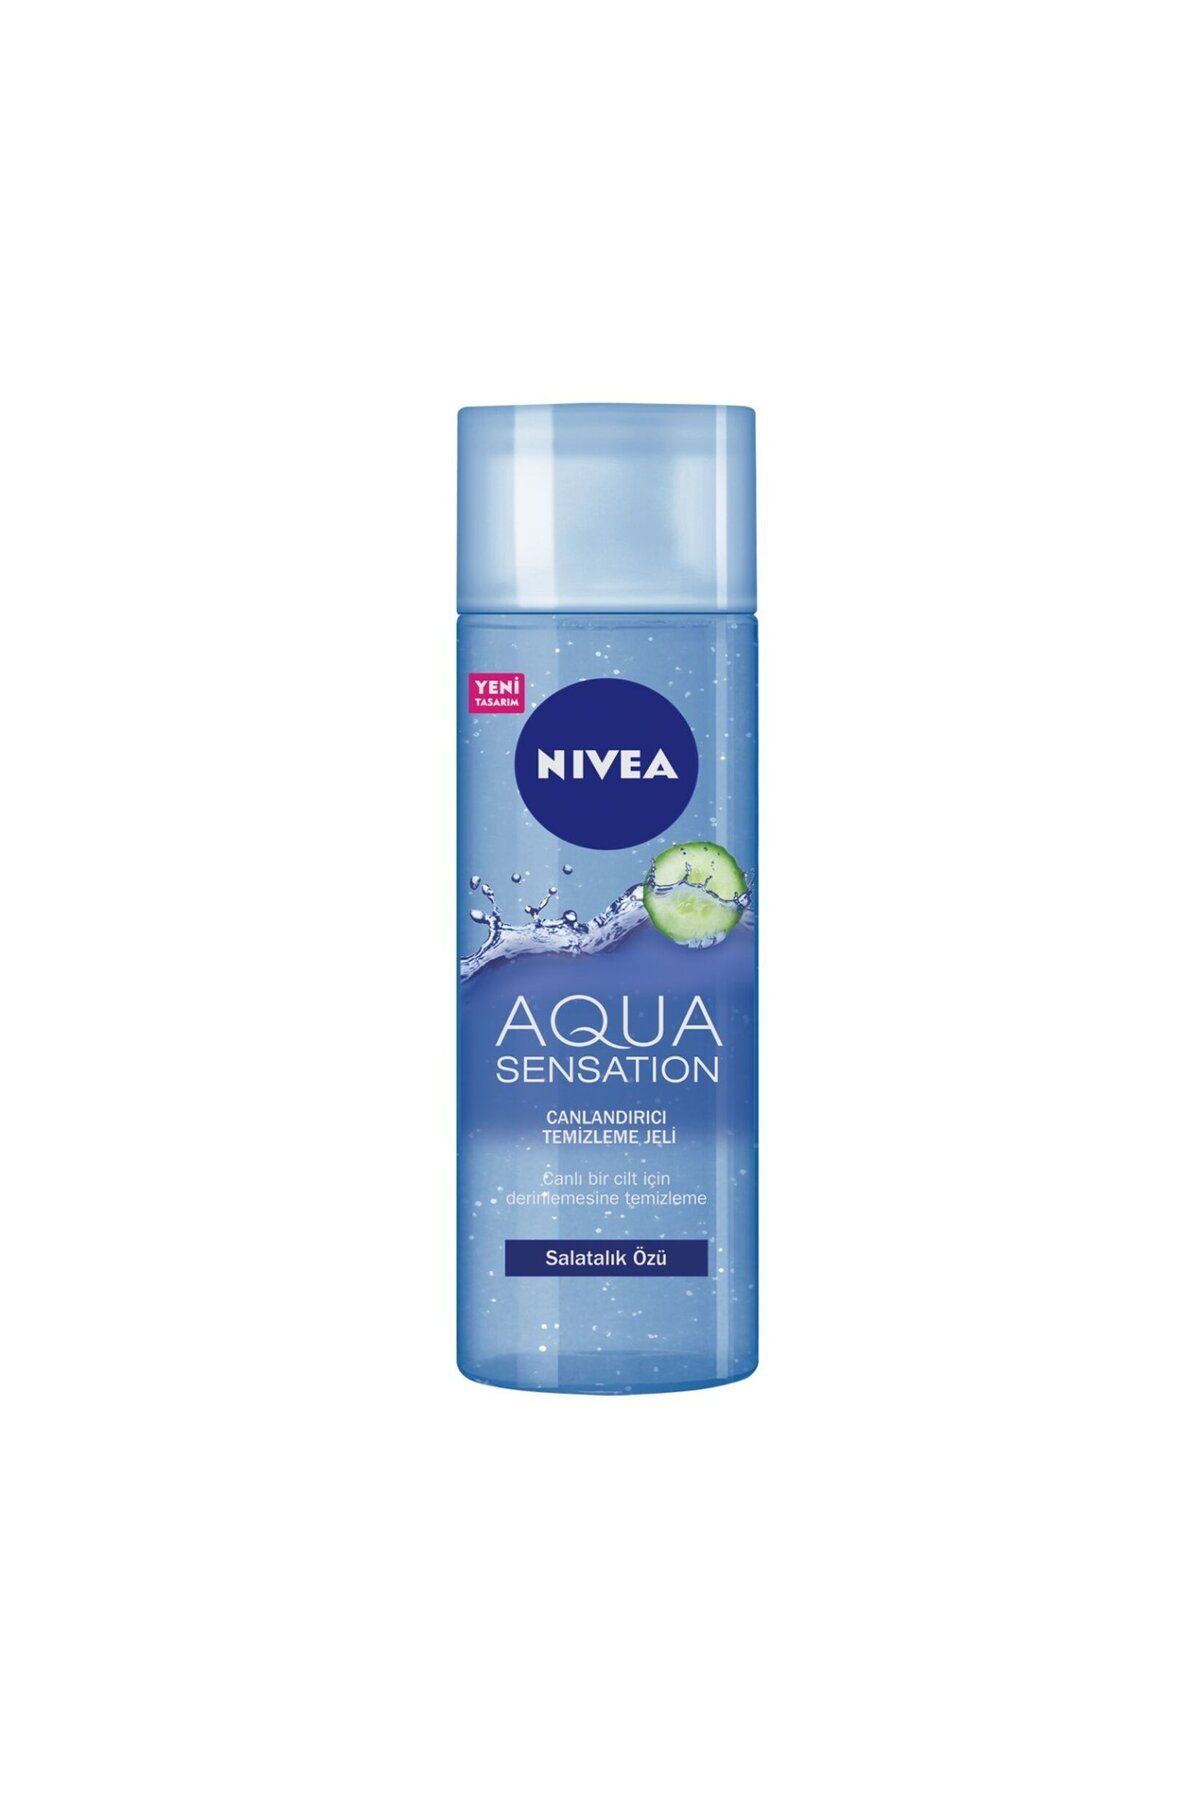 NIVEA Nıvea Aqua Sensation Canlandırıcı Yüz Temizleme Jeli 200ml